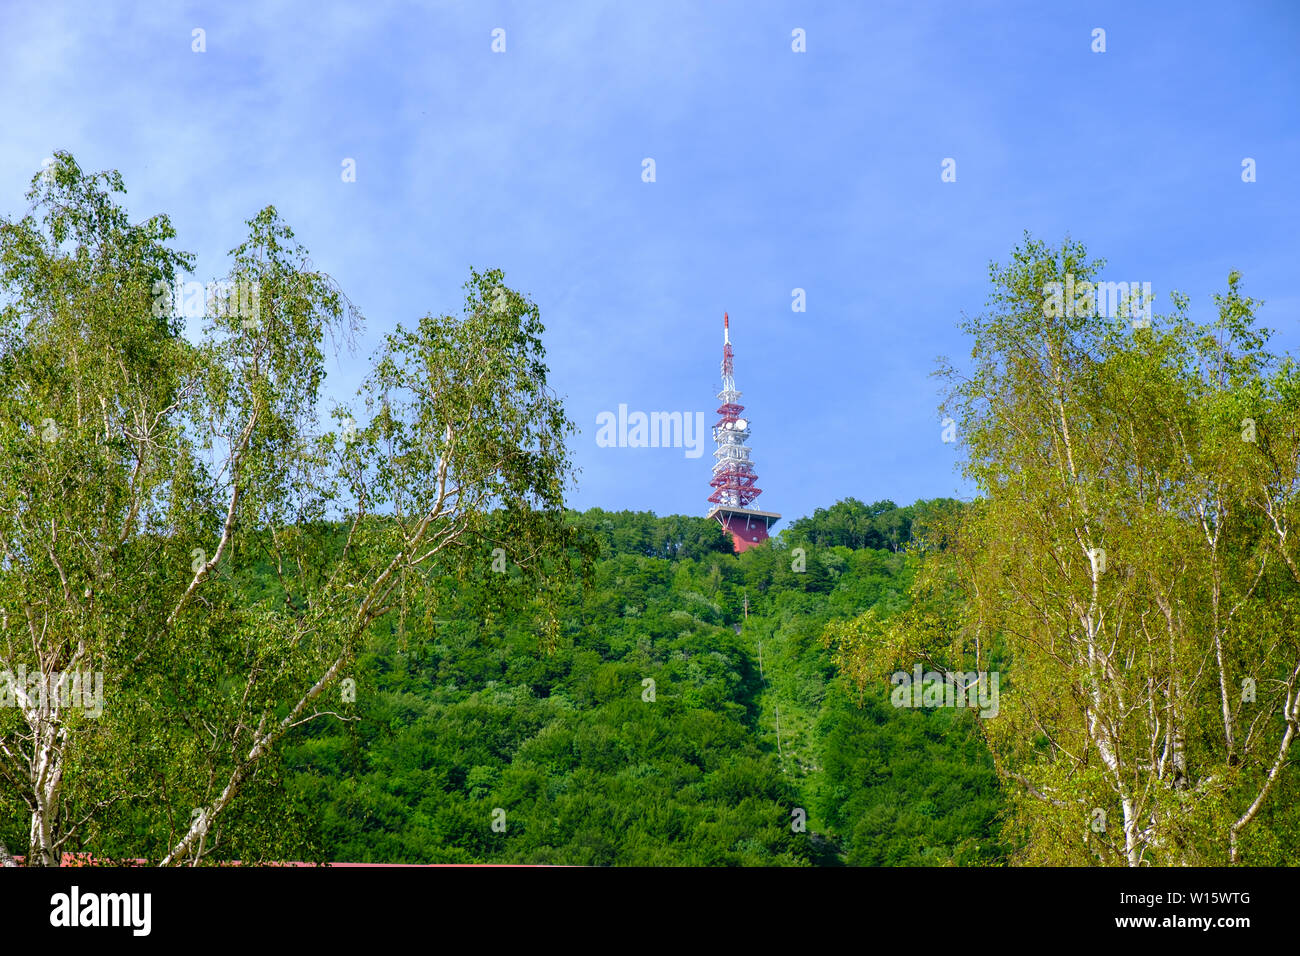 Kommunikation und Broadcast Tower auf der Spitze des Berges, der rote und weiße Antenne oben auf bewaldete Hang, Boc in Slowenien Stockfoto